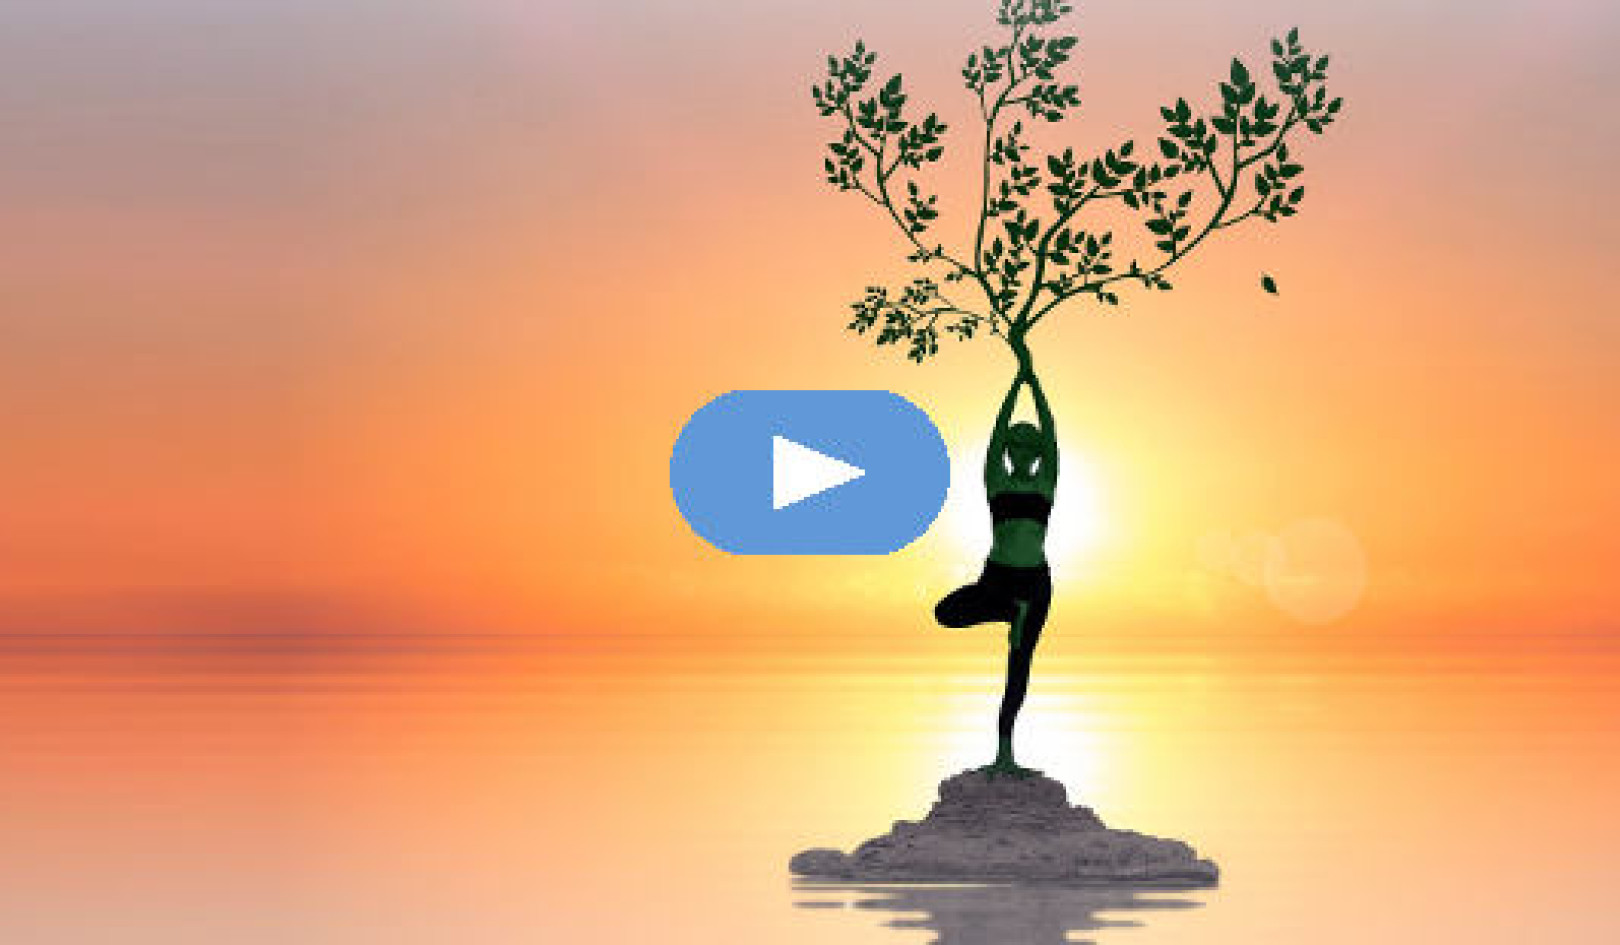 Verandering kan nieuw leven en energie brengen (video)